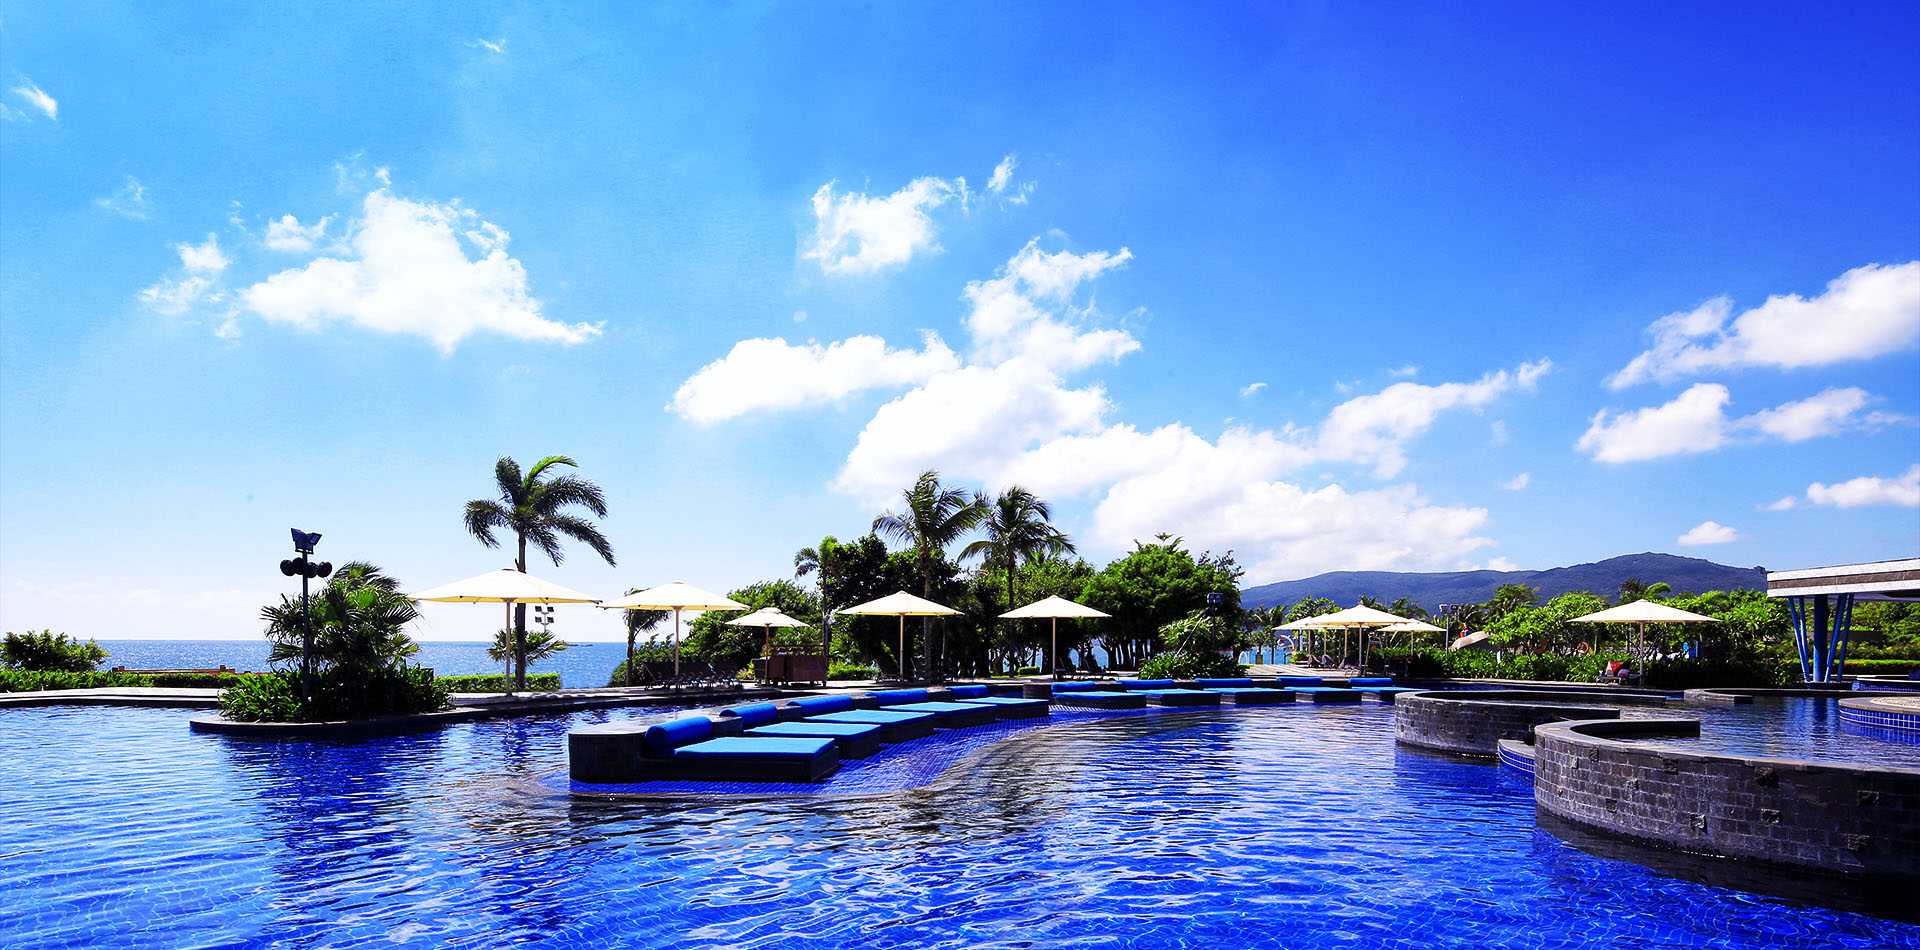 泰国普吉岛酒店景观2 the naka phuket hotel by dbalp (ii) by DBALP – 灵感邦_Ideabooom